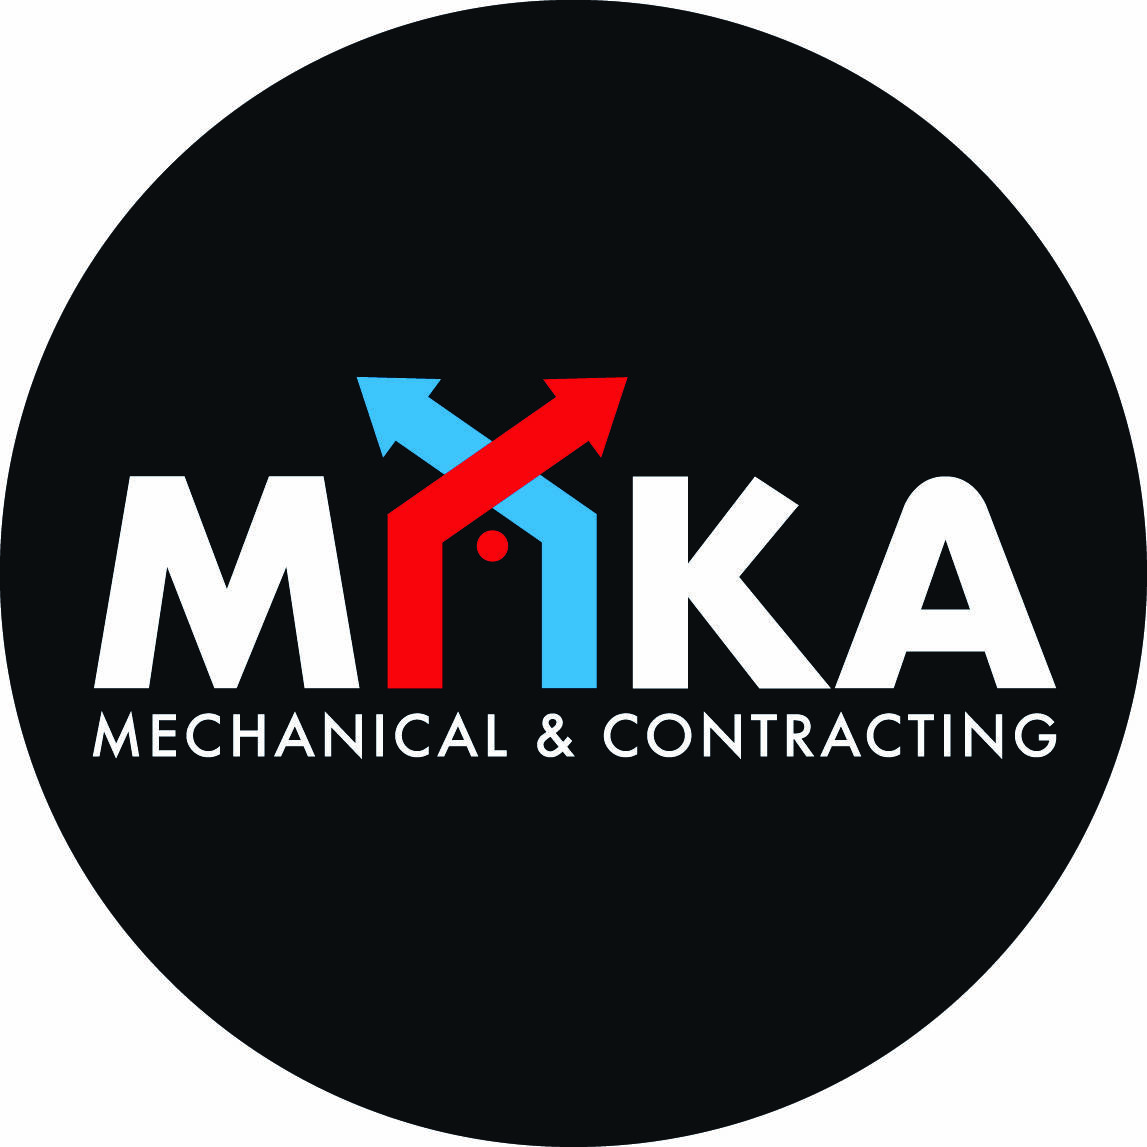 Maka Mechanical & Contracting